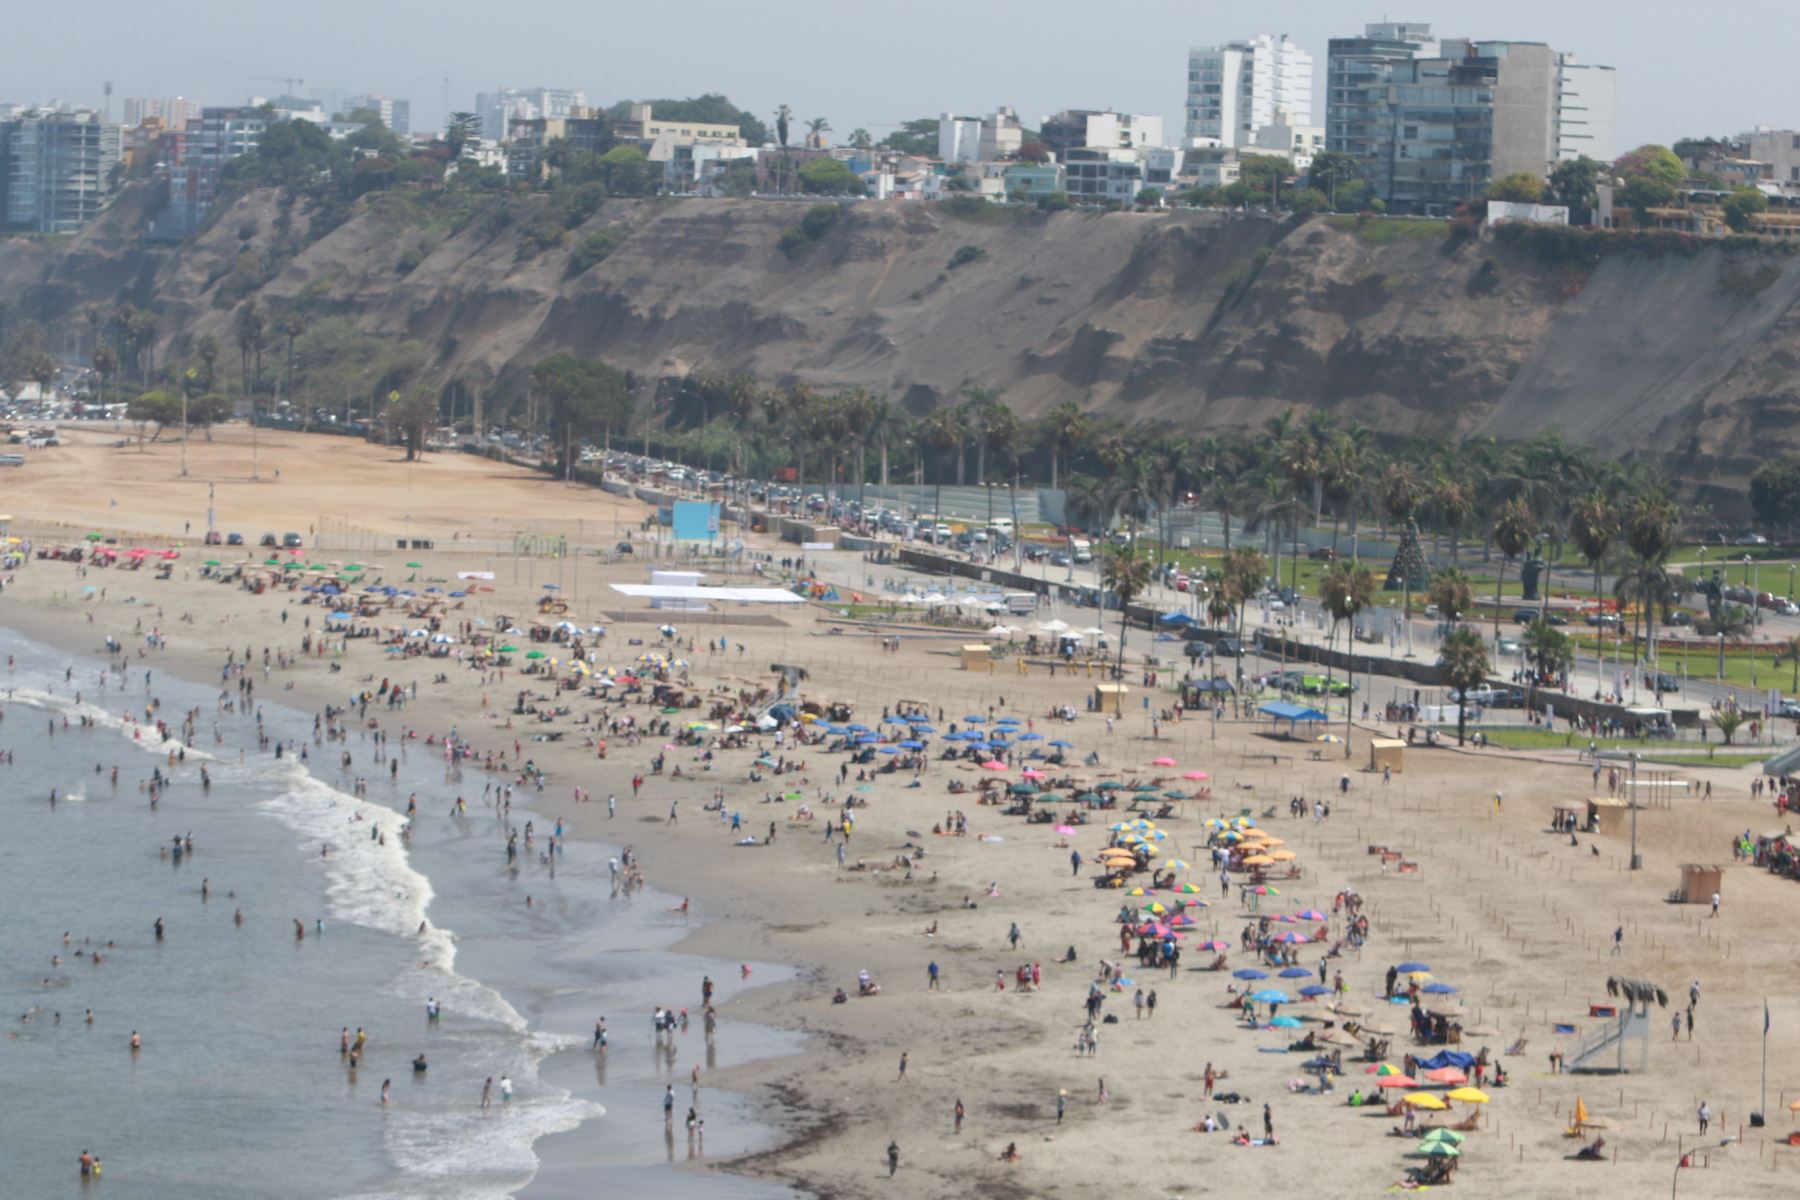 Las playas calificadas de saludables aprobaron tres condiciones sanitarias básicas: calidad microbiológica, calidad de limpieza e instalación de servicios higiénicos. Foto: ANDINA/Héctor Vinces.